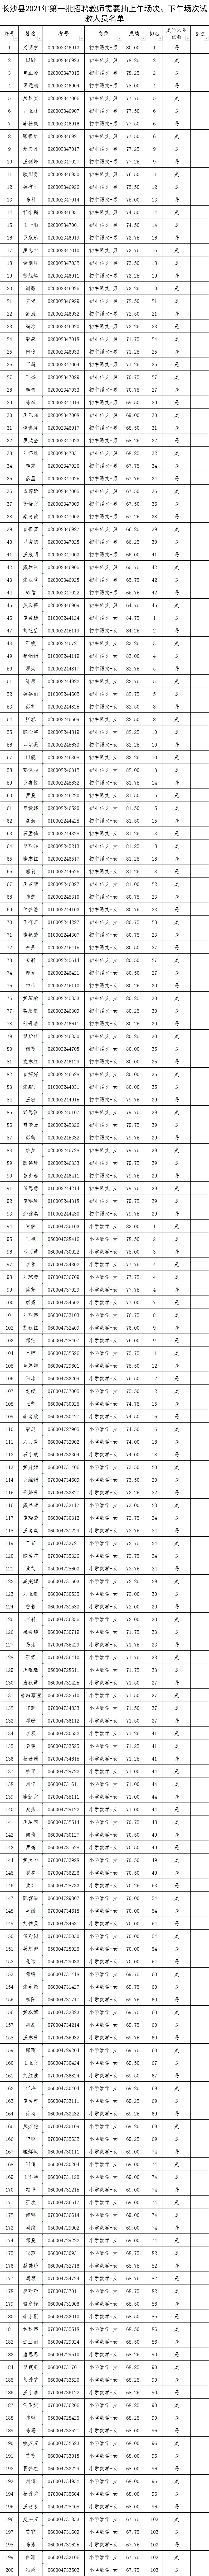 长沙县2021年第一批次教师招聘试教（专业技能测试）通知(图2)